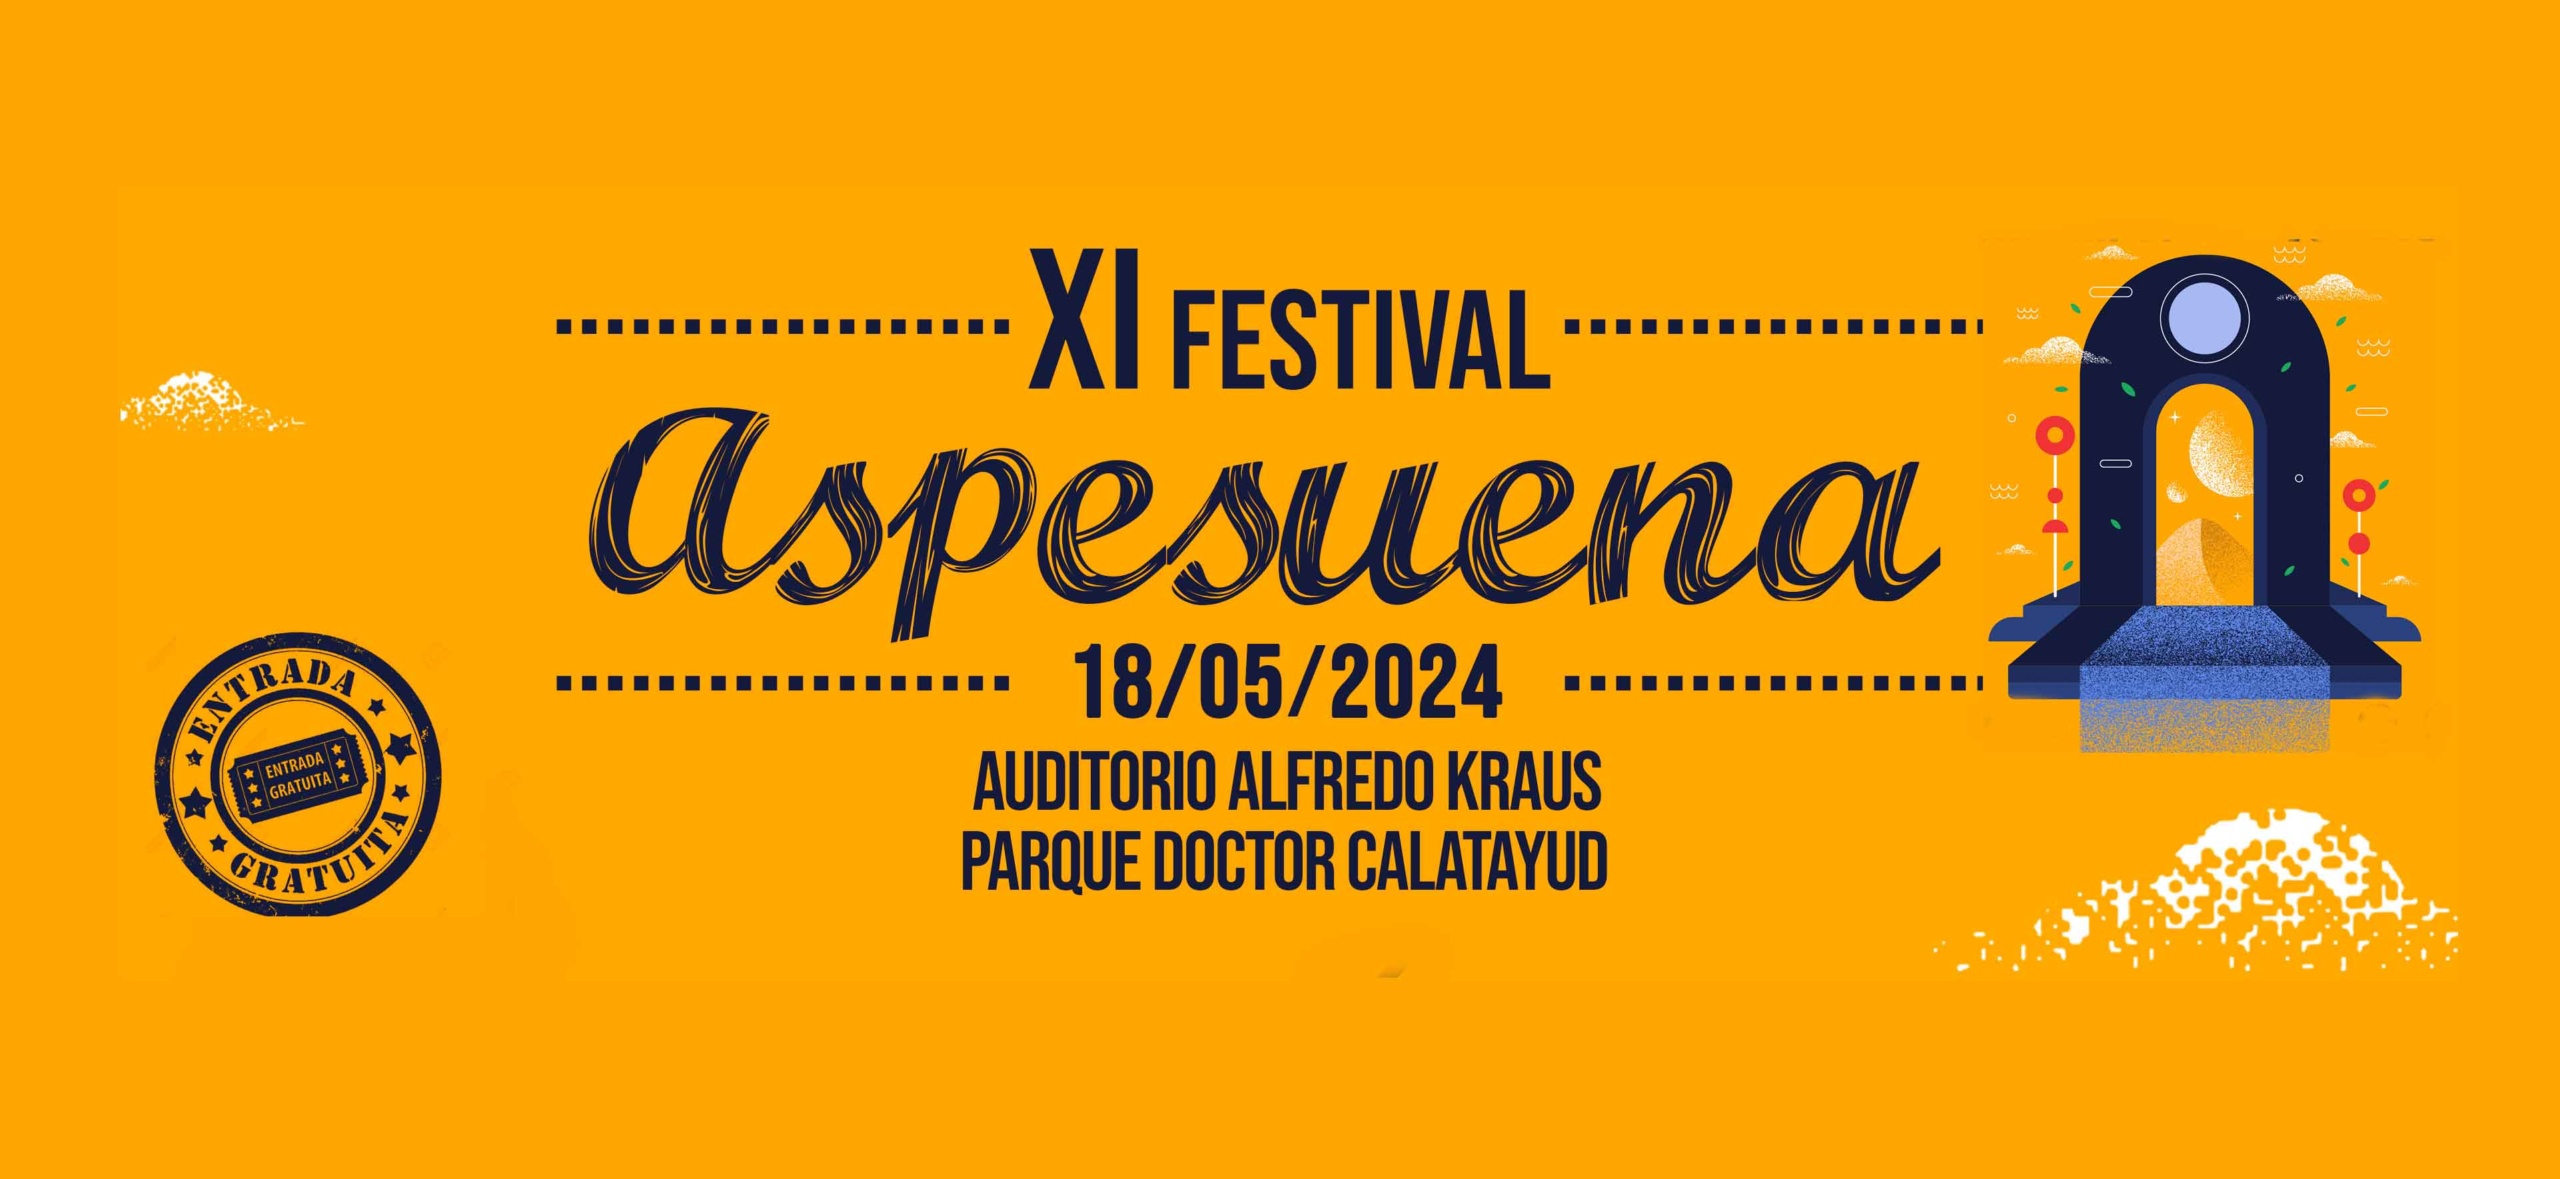 festival Aspesuena